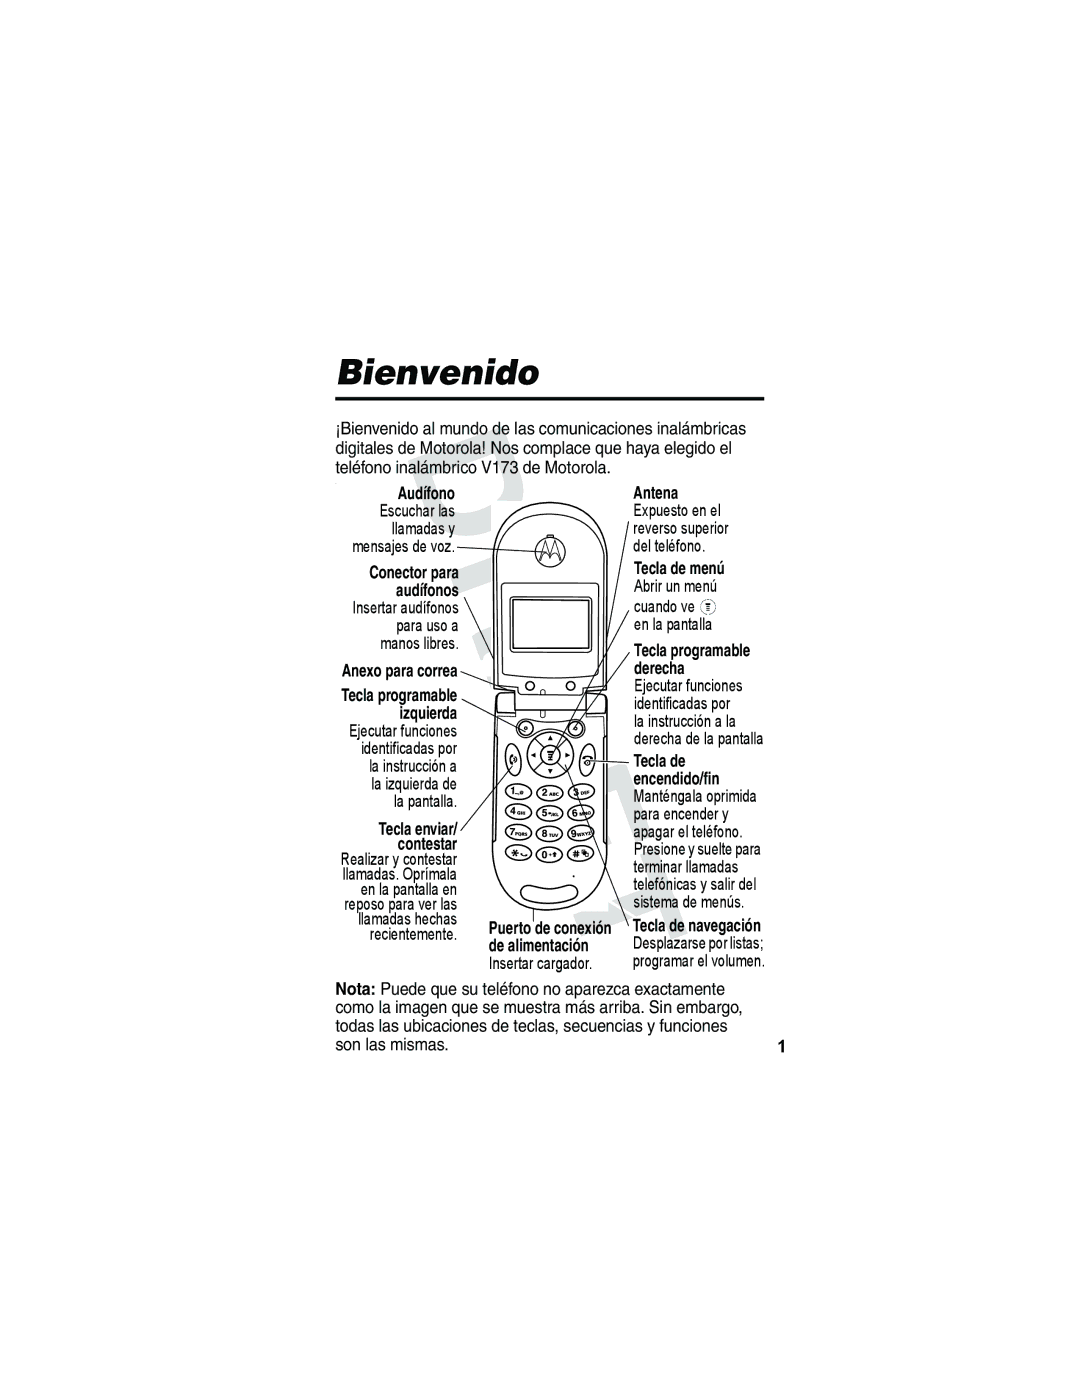 Motorola V173 manual Bienvenido, Nota Puede que su teléfono no aparezca exactamente, Son las mismas 